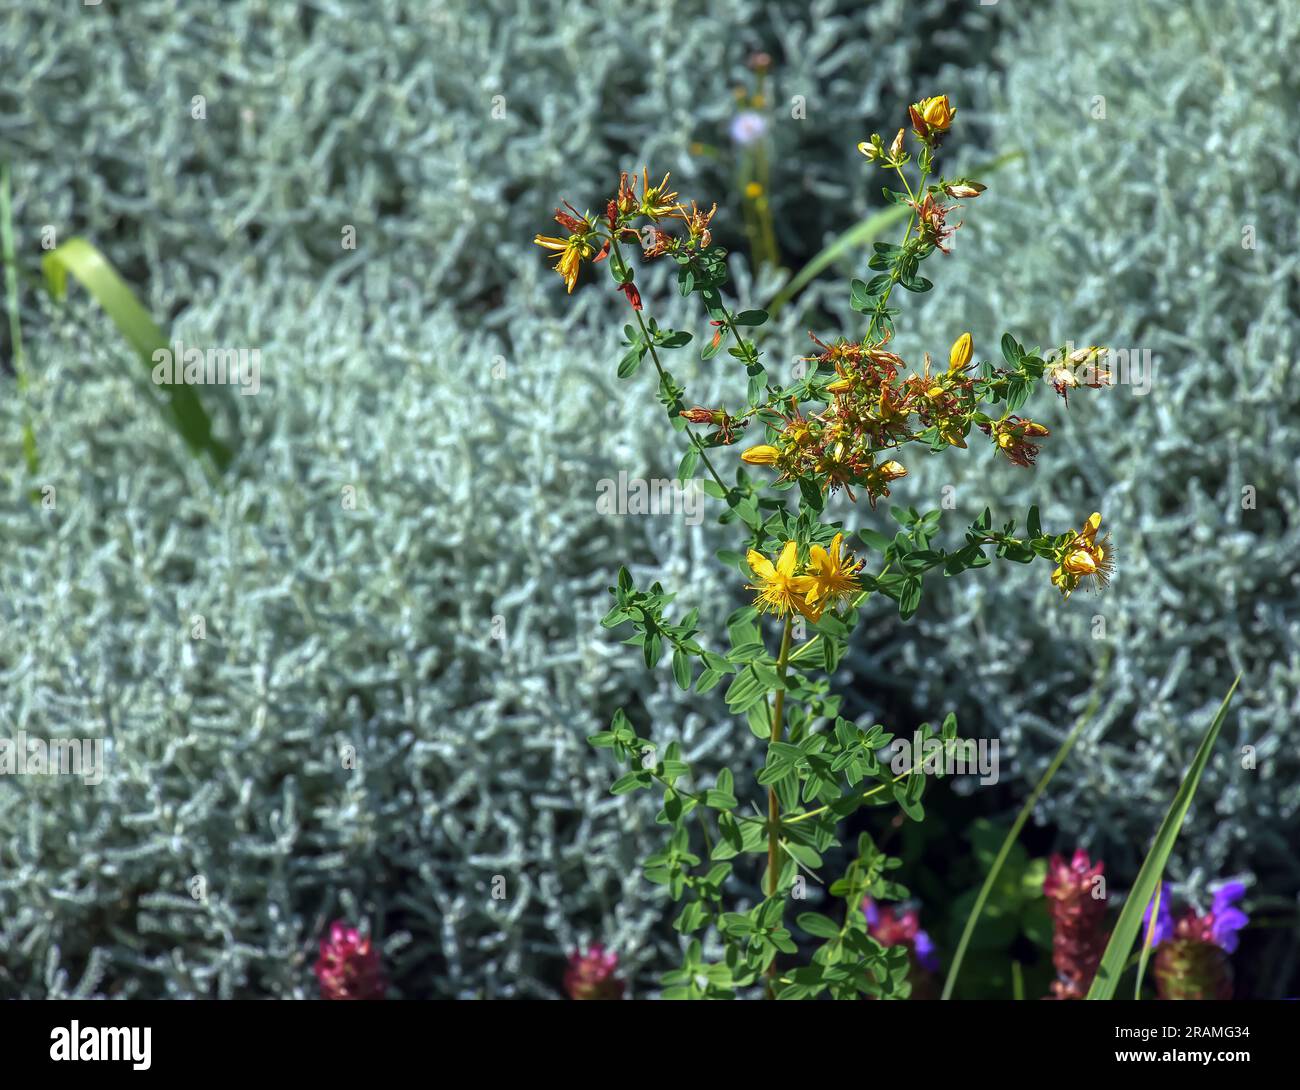 Close-up of a flowering medicinal herb St. John's wort. Latin name Hypericum perforatum L. Stock Photo